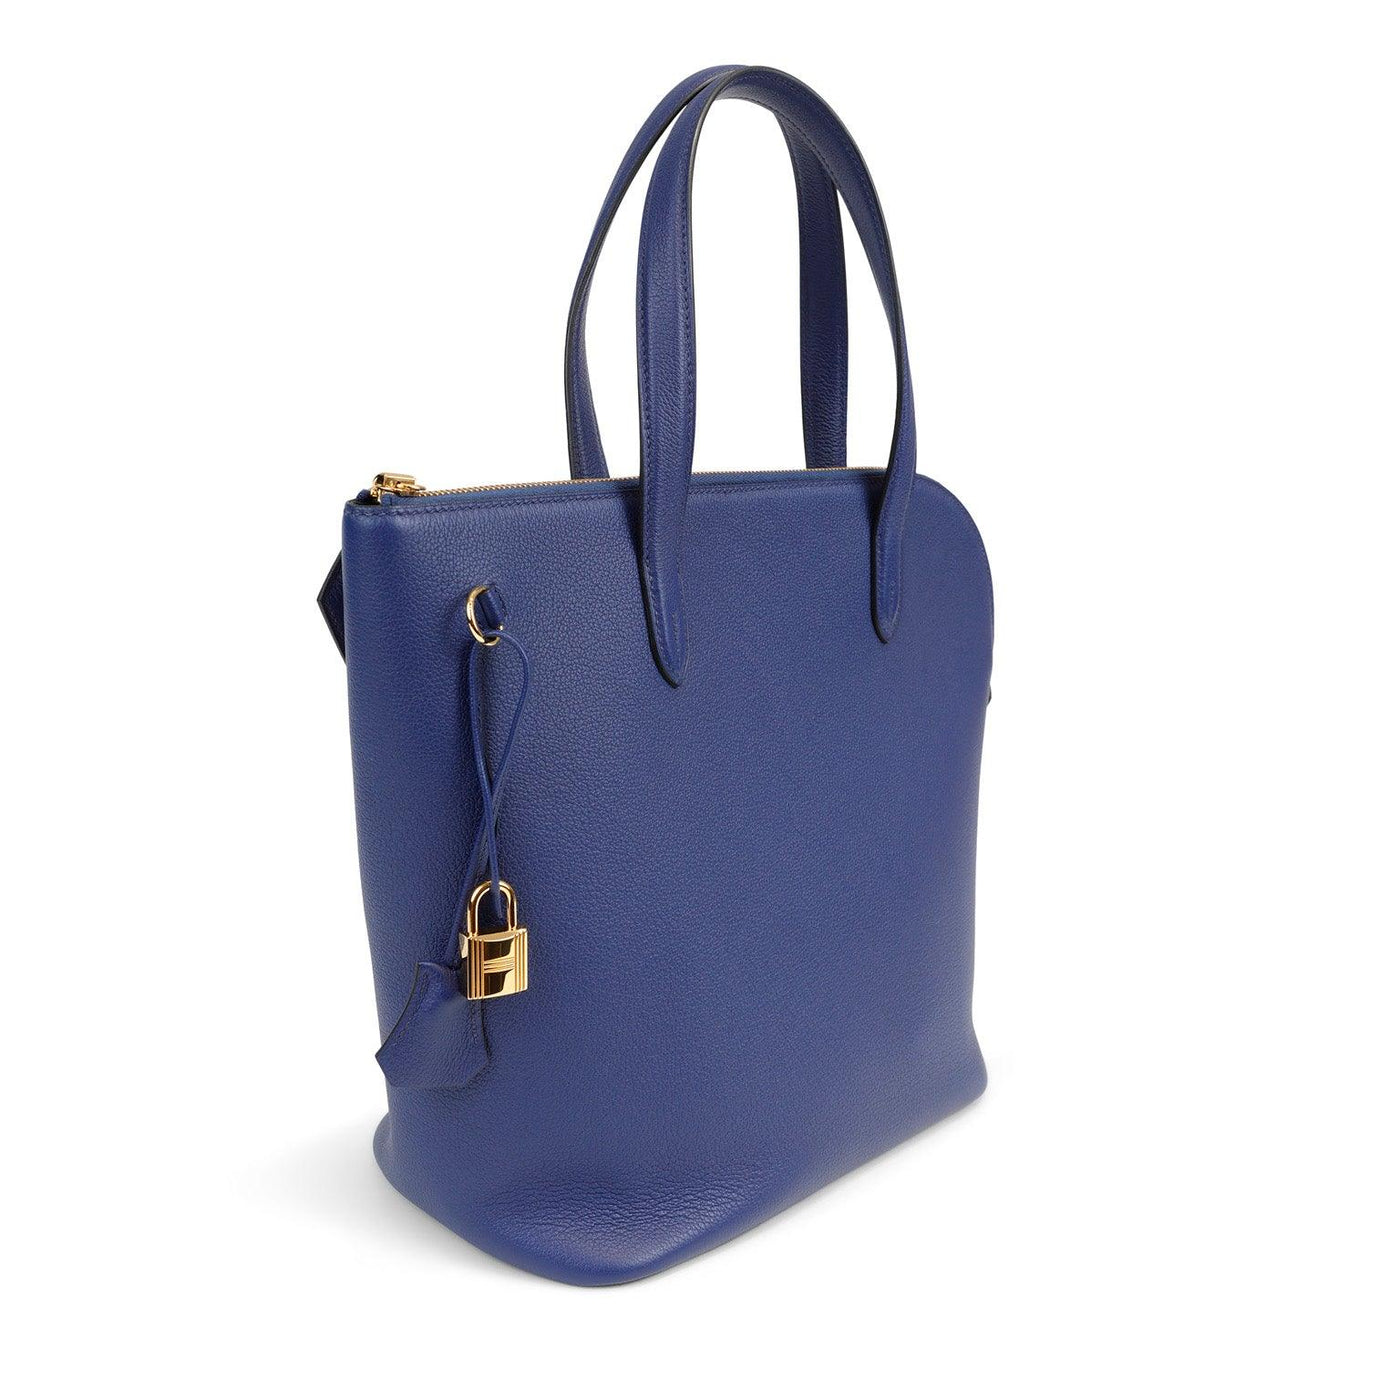 Hermès Cobalt Blue Evergrain Commuter Bag - Only Authentics